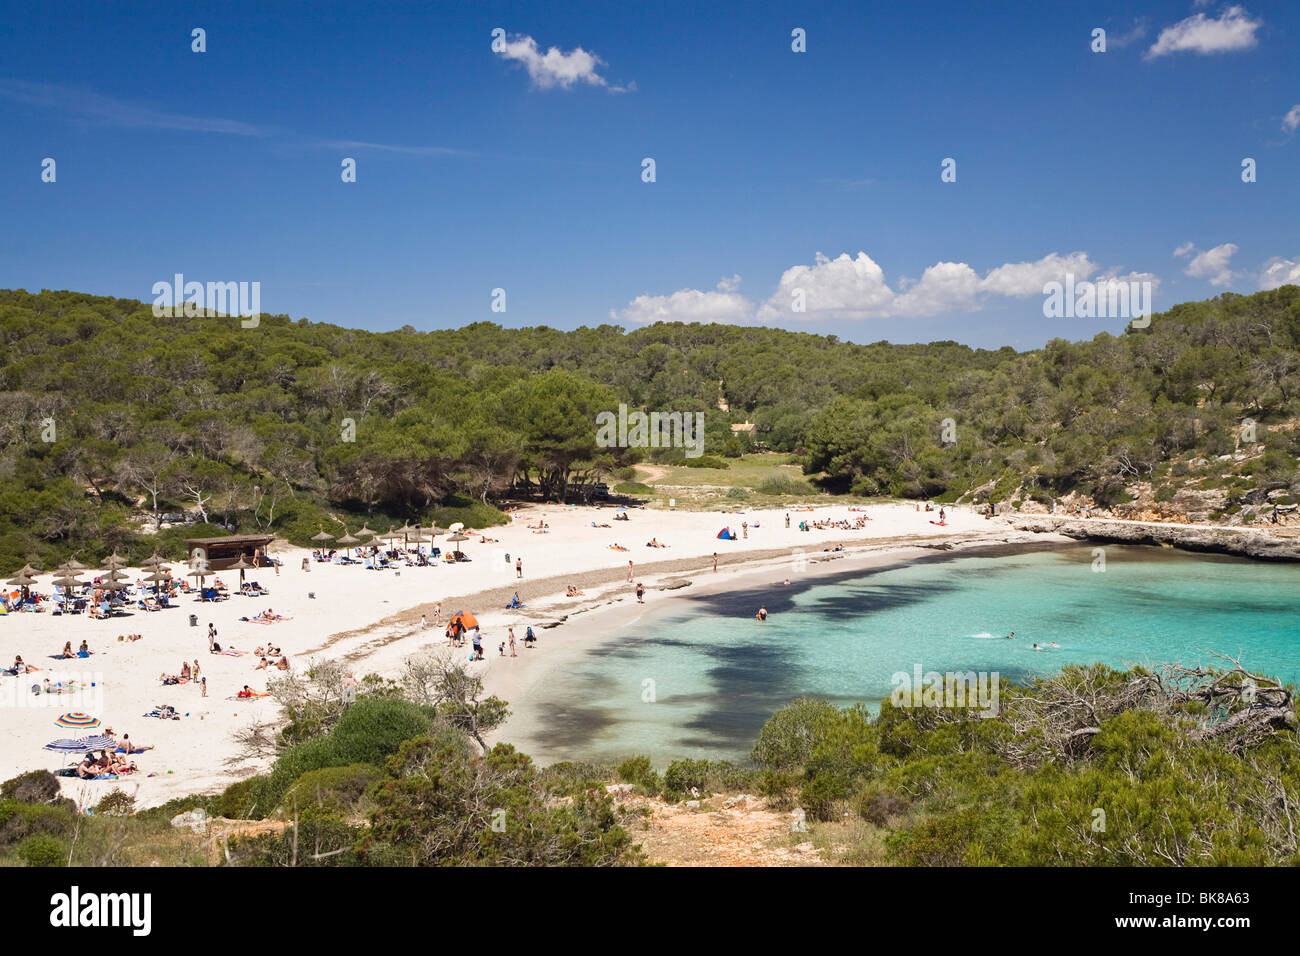 Beach life in the bay of s'Amarador, Cala Mondragó, natural park of Mondragó, Mallorca, Majorca, Balearic Islands, Mediterranea Stock Photo